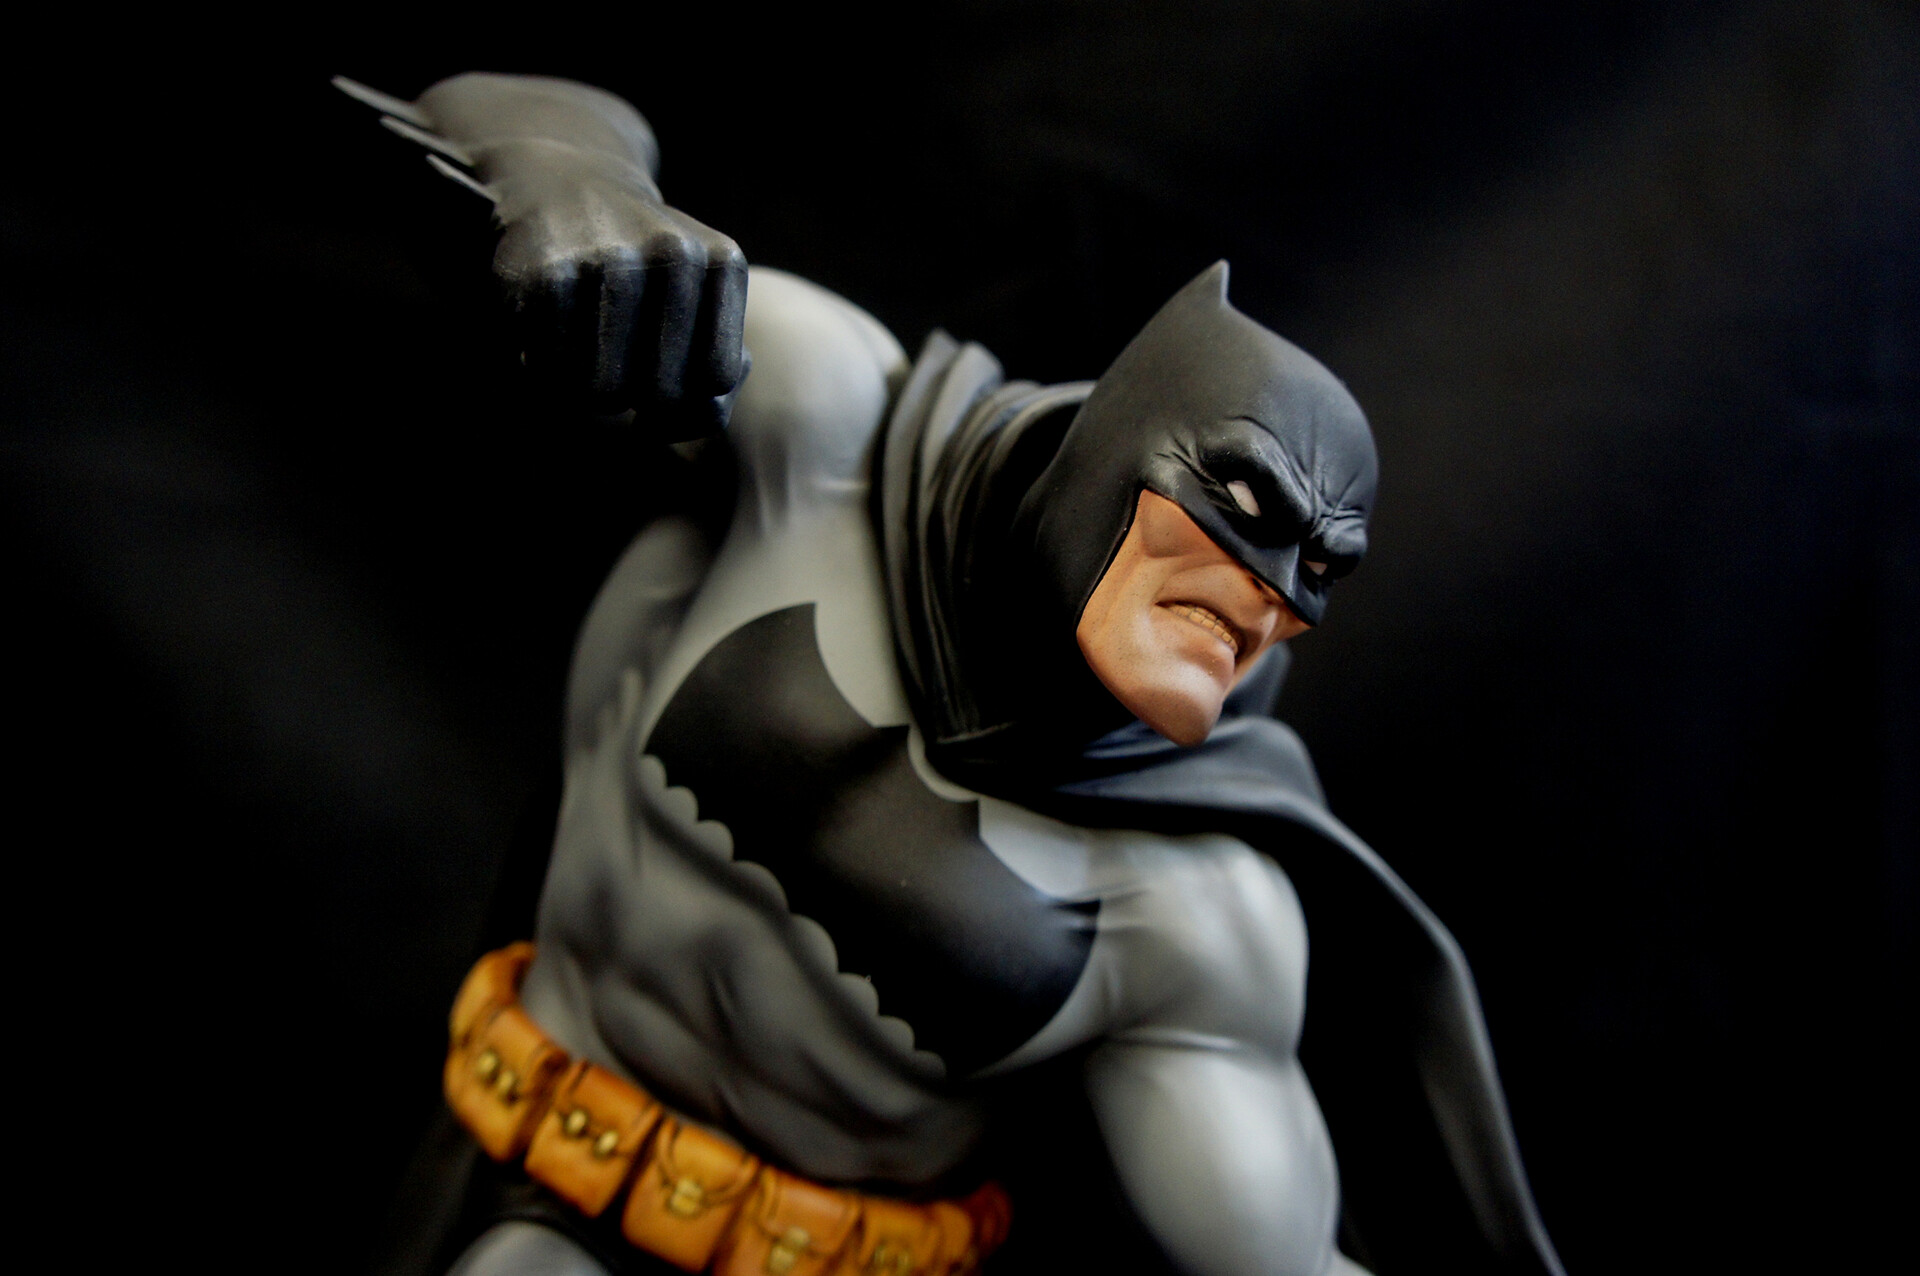 ArtStation - Frank Miller Dark Knight Batman vs Joker Diorama Art Statue